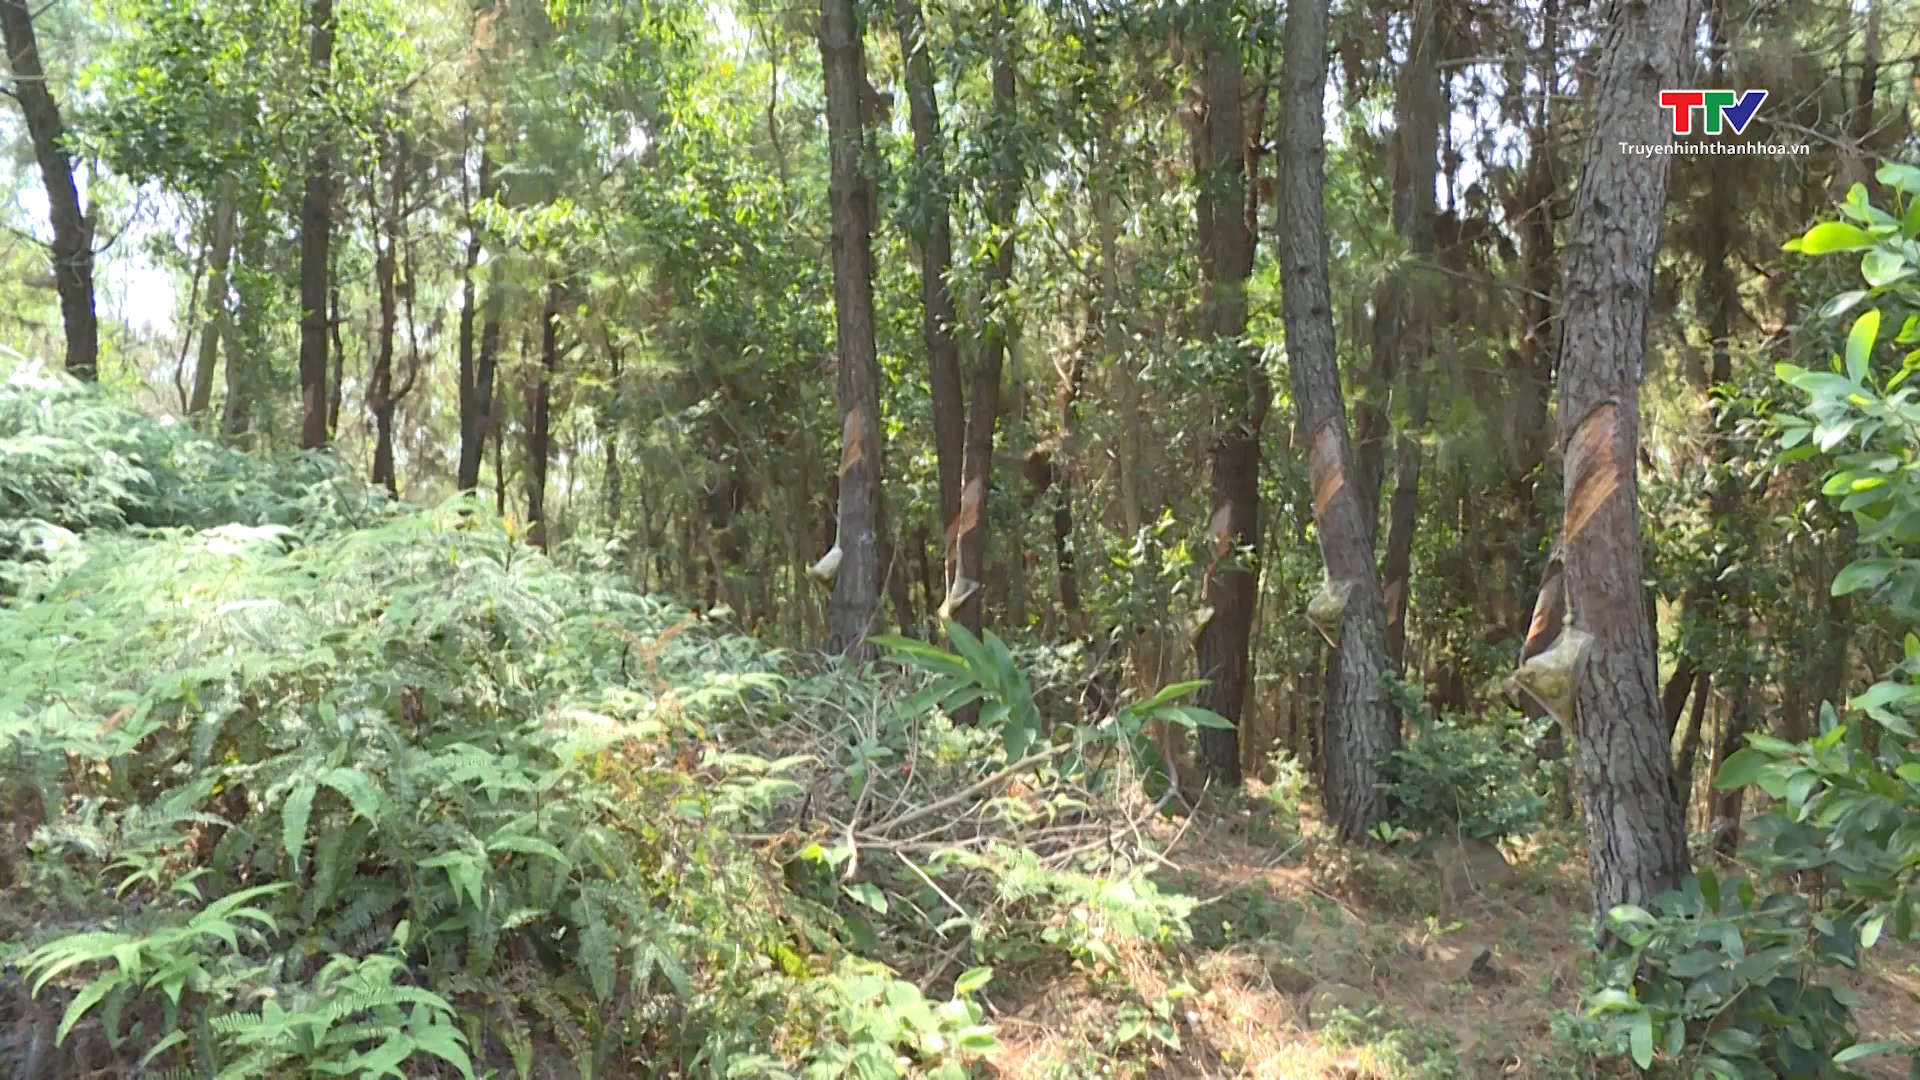 Nâng cao ý thức của người dân  trong công tác tuyên truyền pháp luật bảo vệ rừng - Ảnh 6.